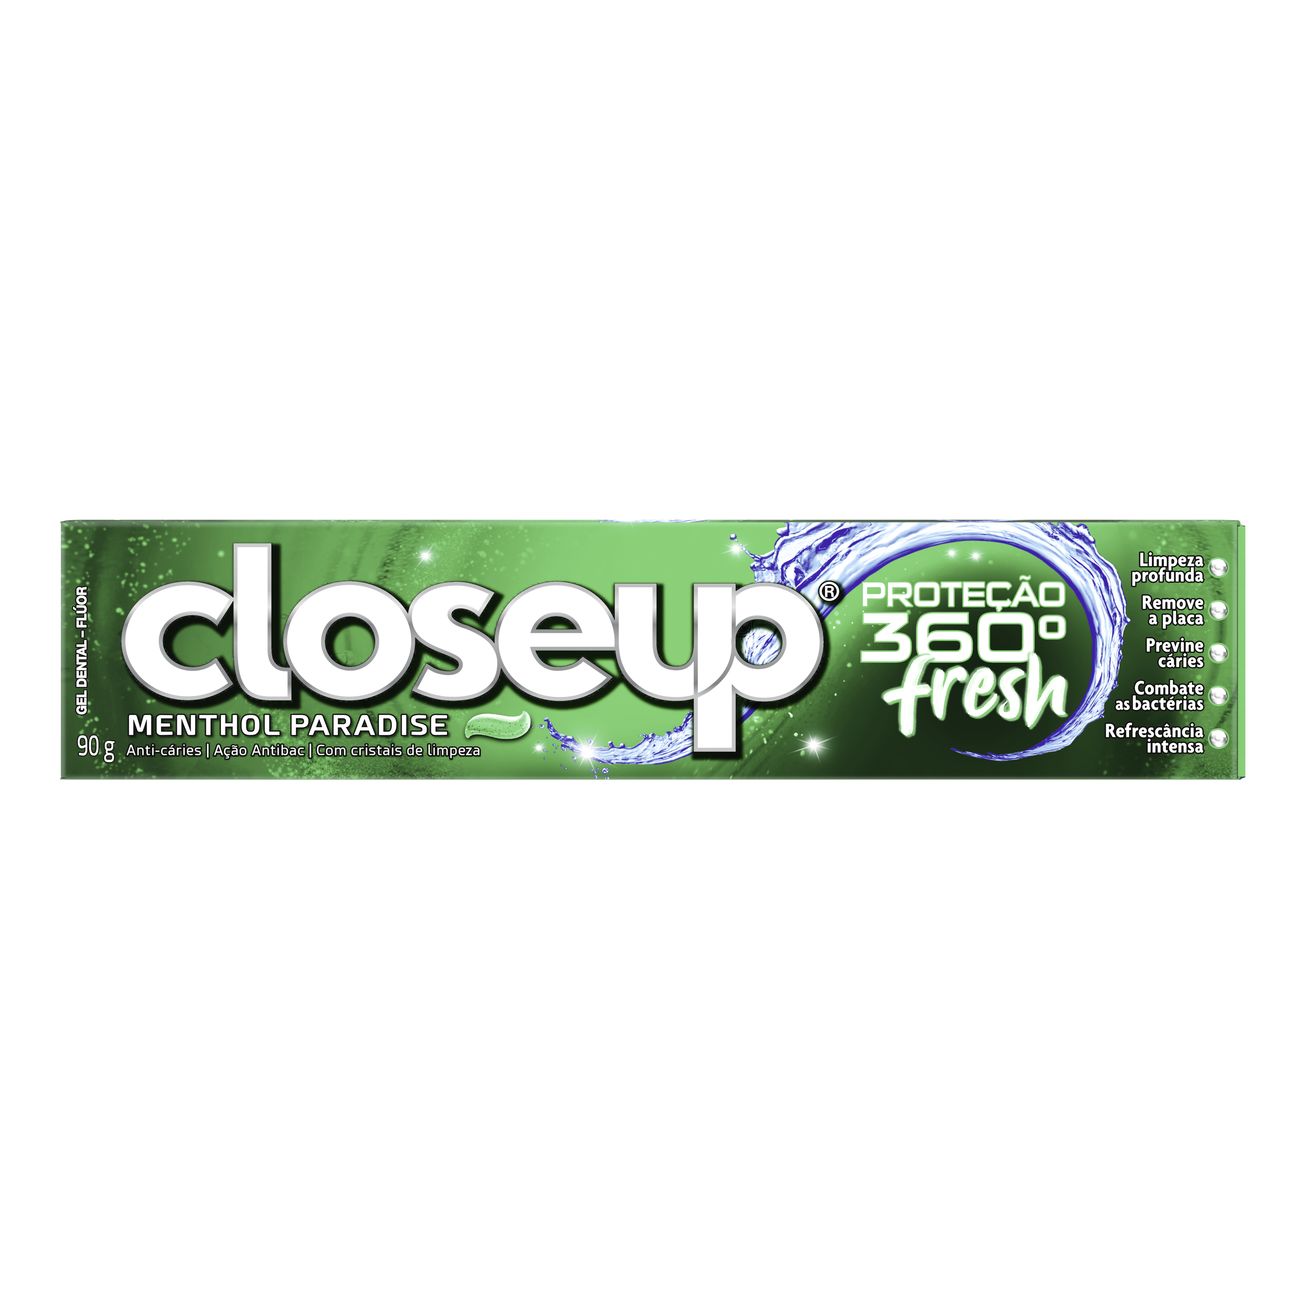 Creme Dental em Gel Ação Antibac Closeup Proteção 360º Fresh Menthol Paradise 90g